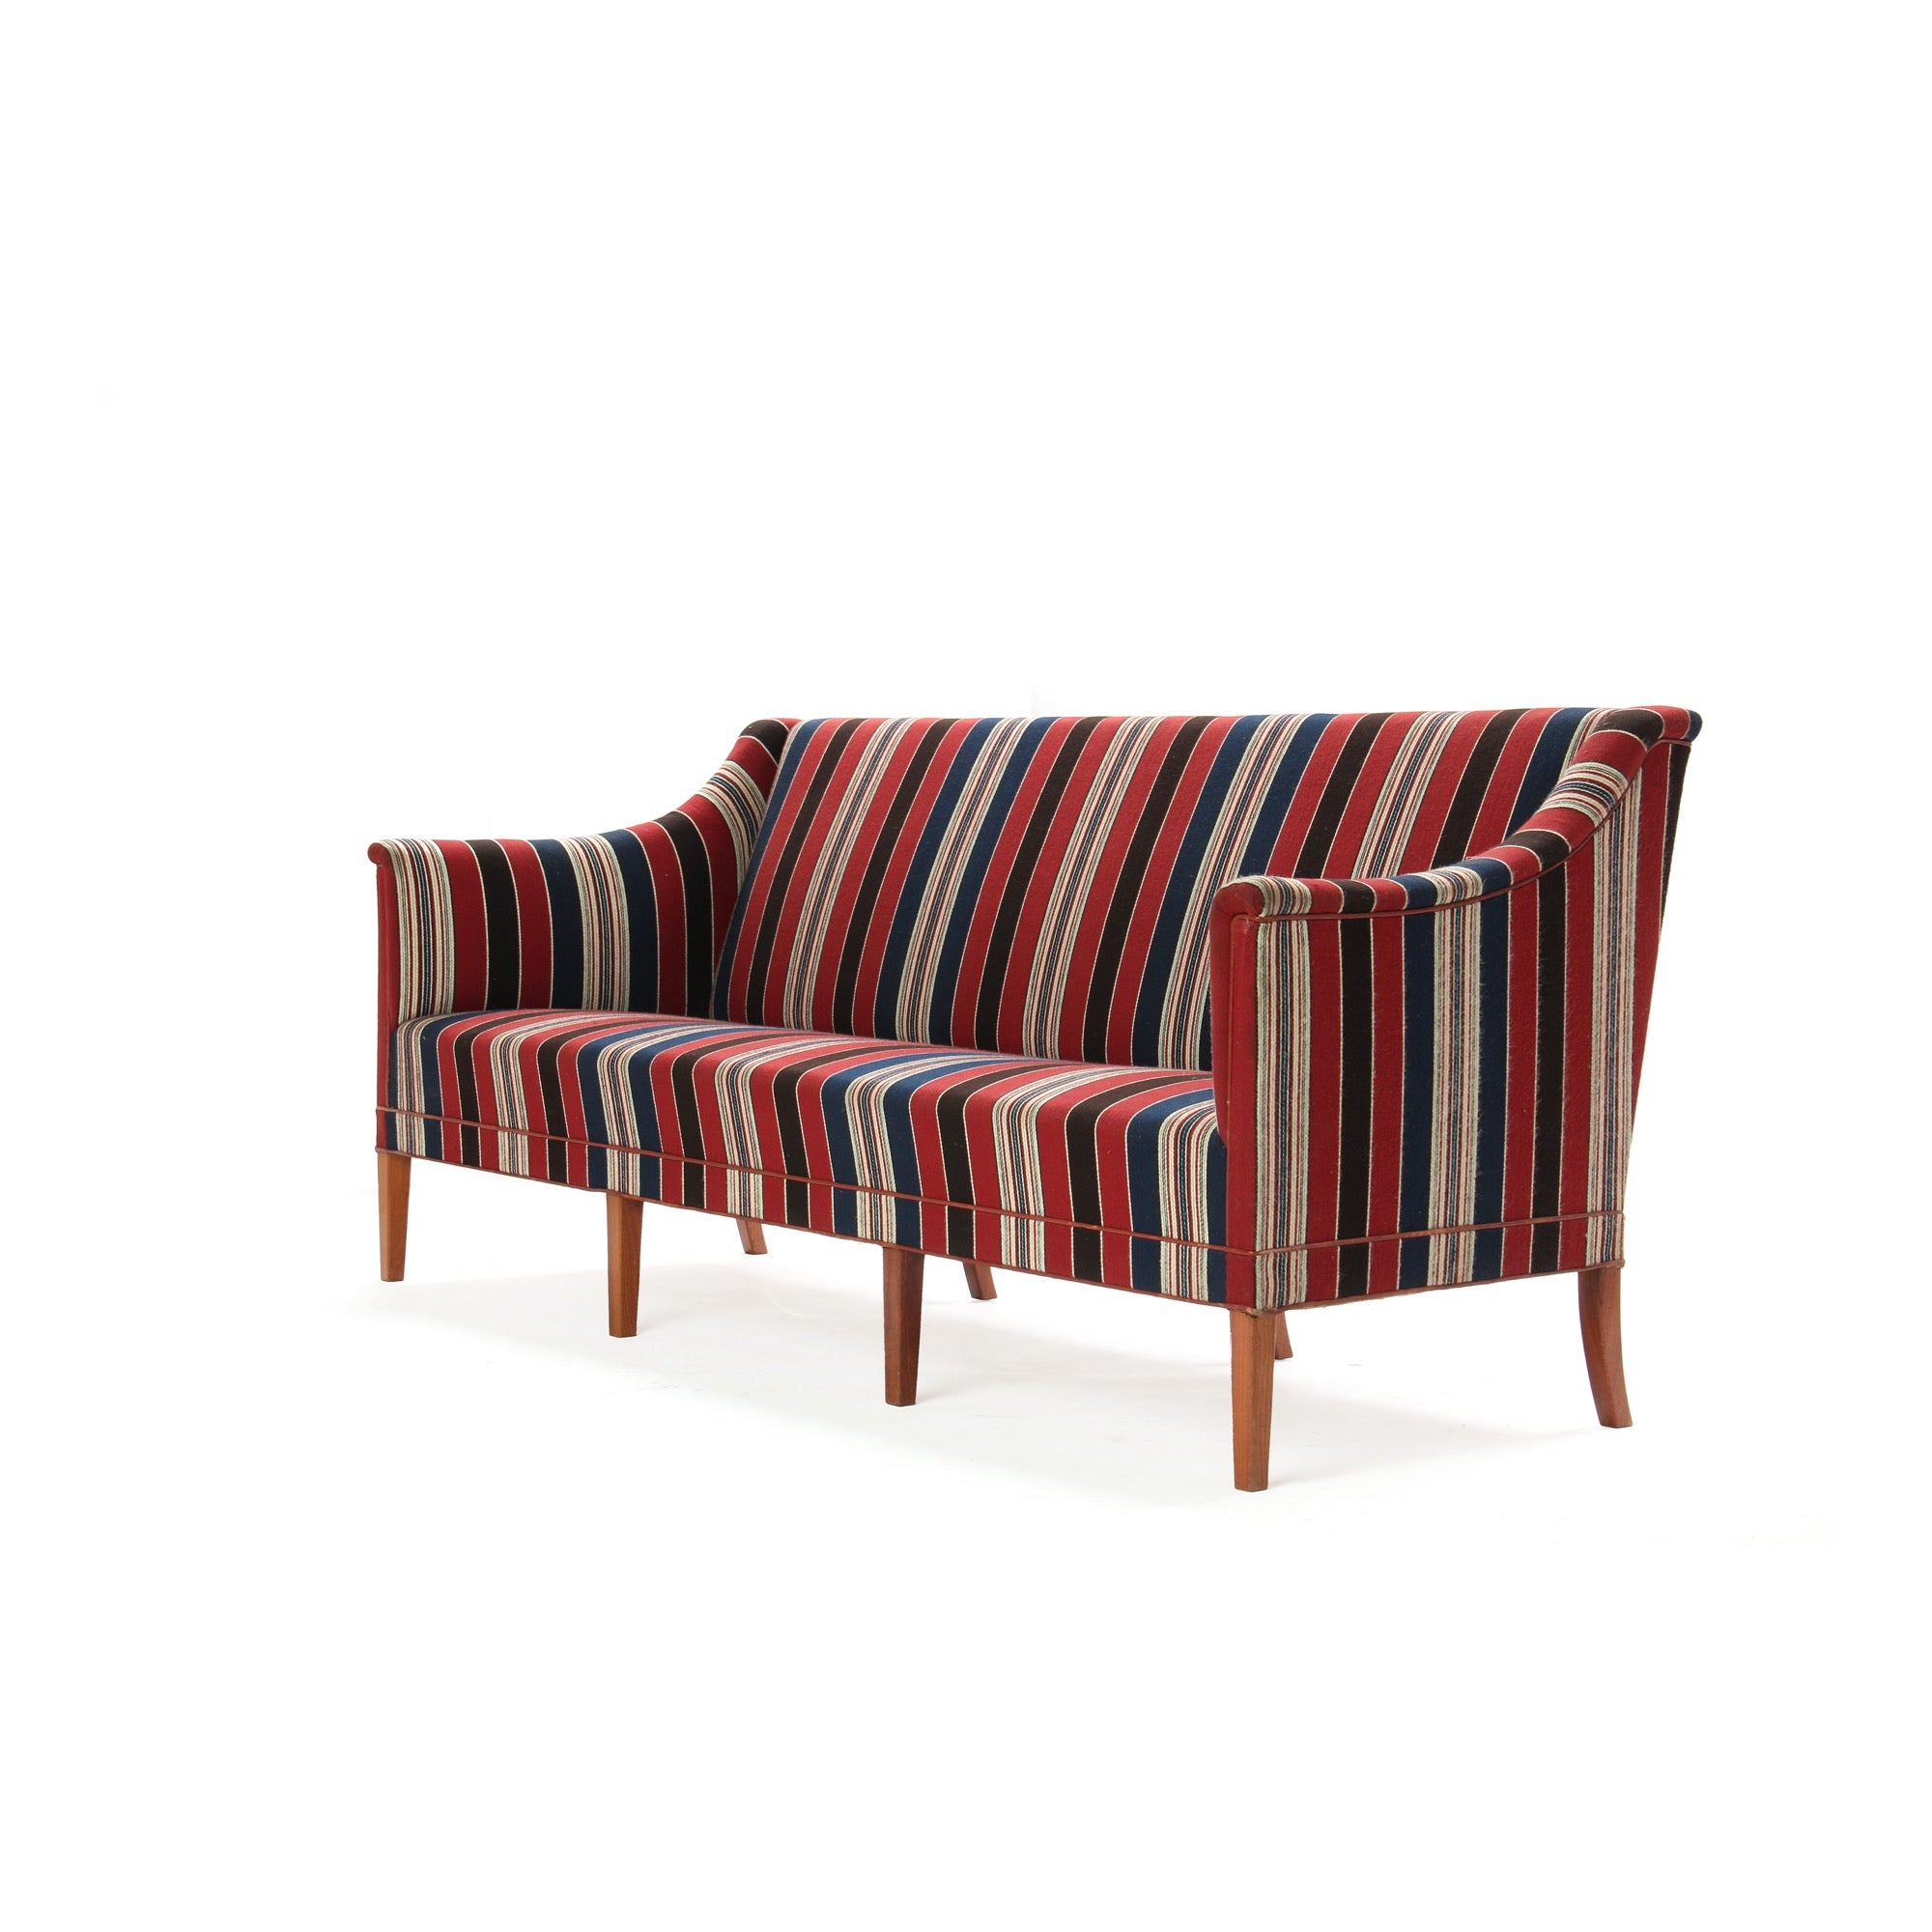 Sofa by Kaare Klint for Rud Rasmussen, 1940s